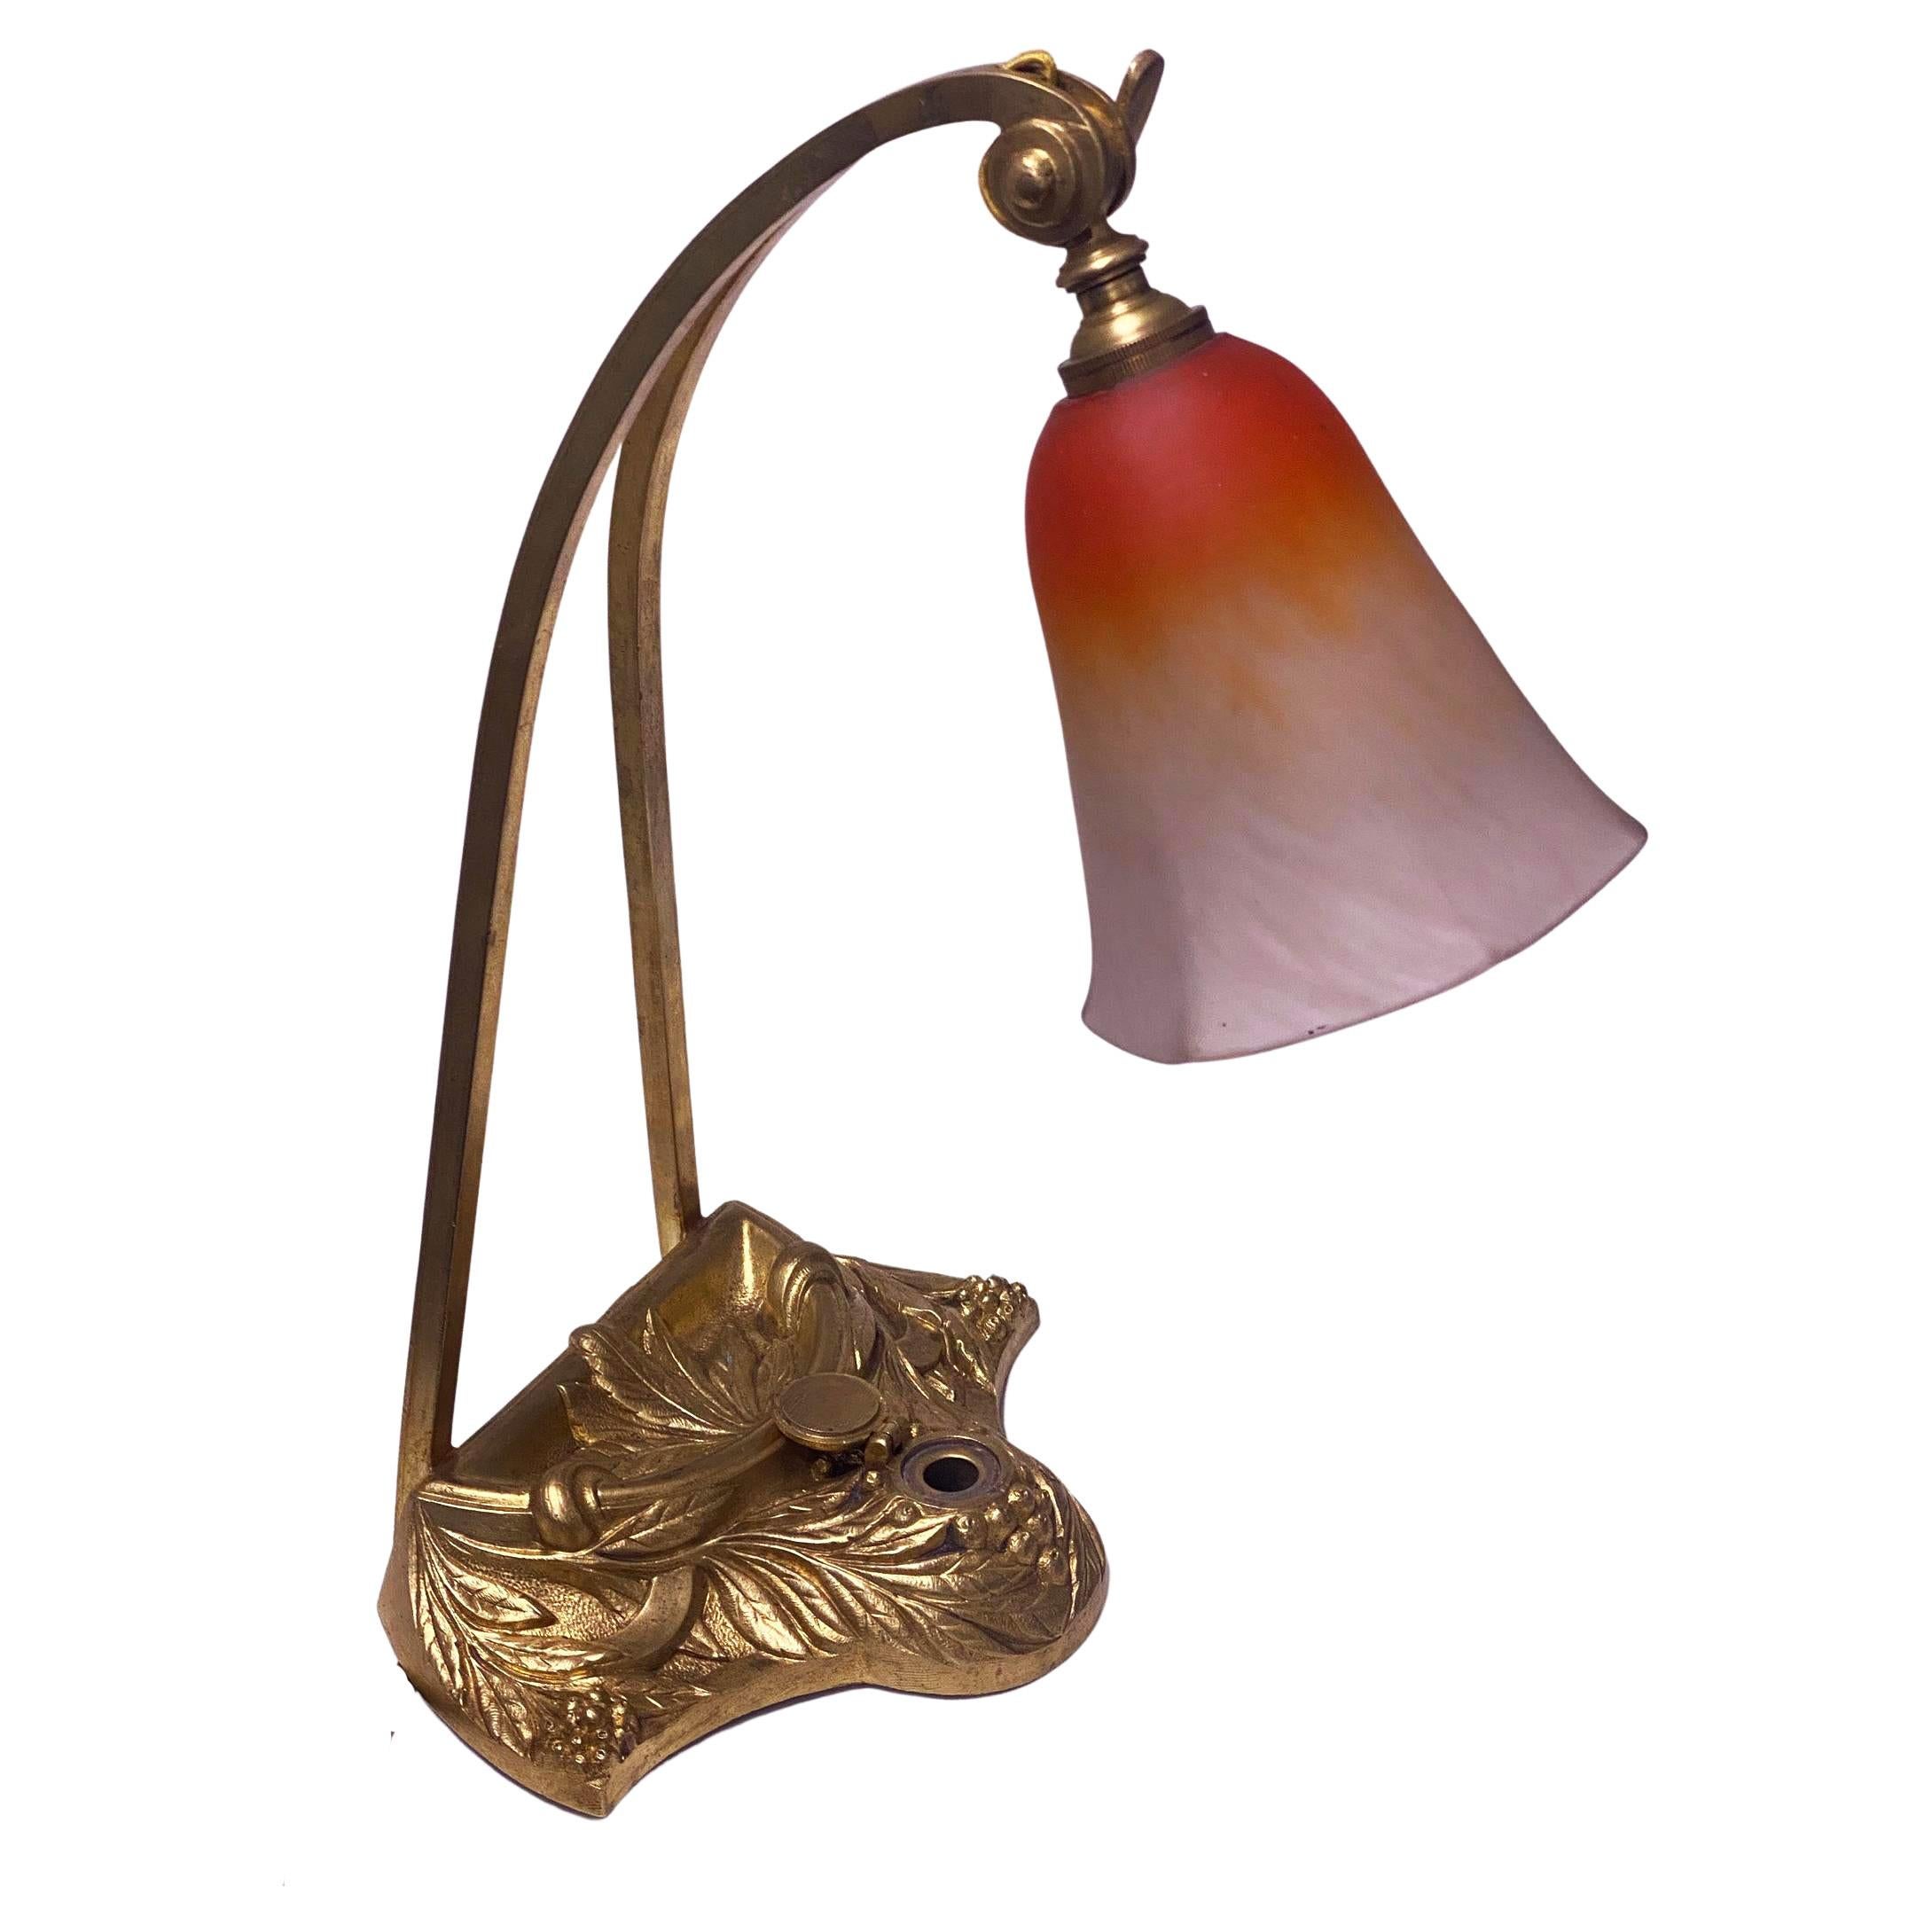 art nouveau table lamps